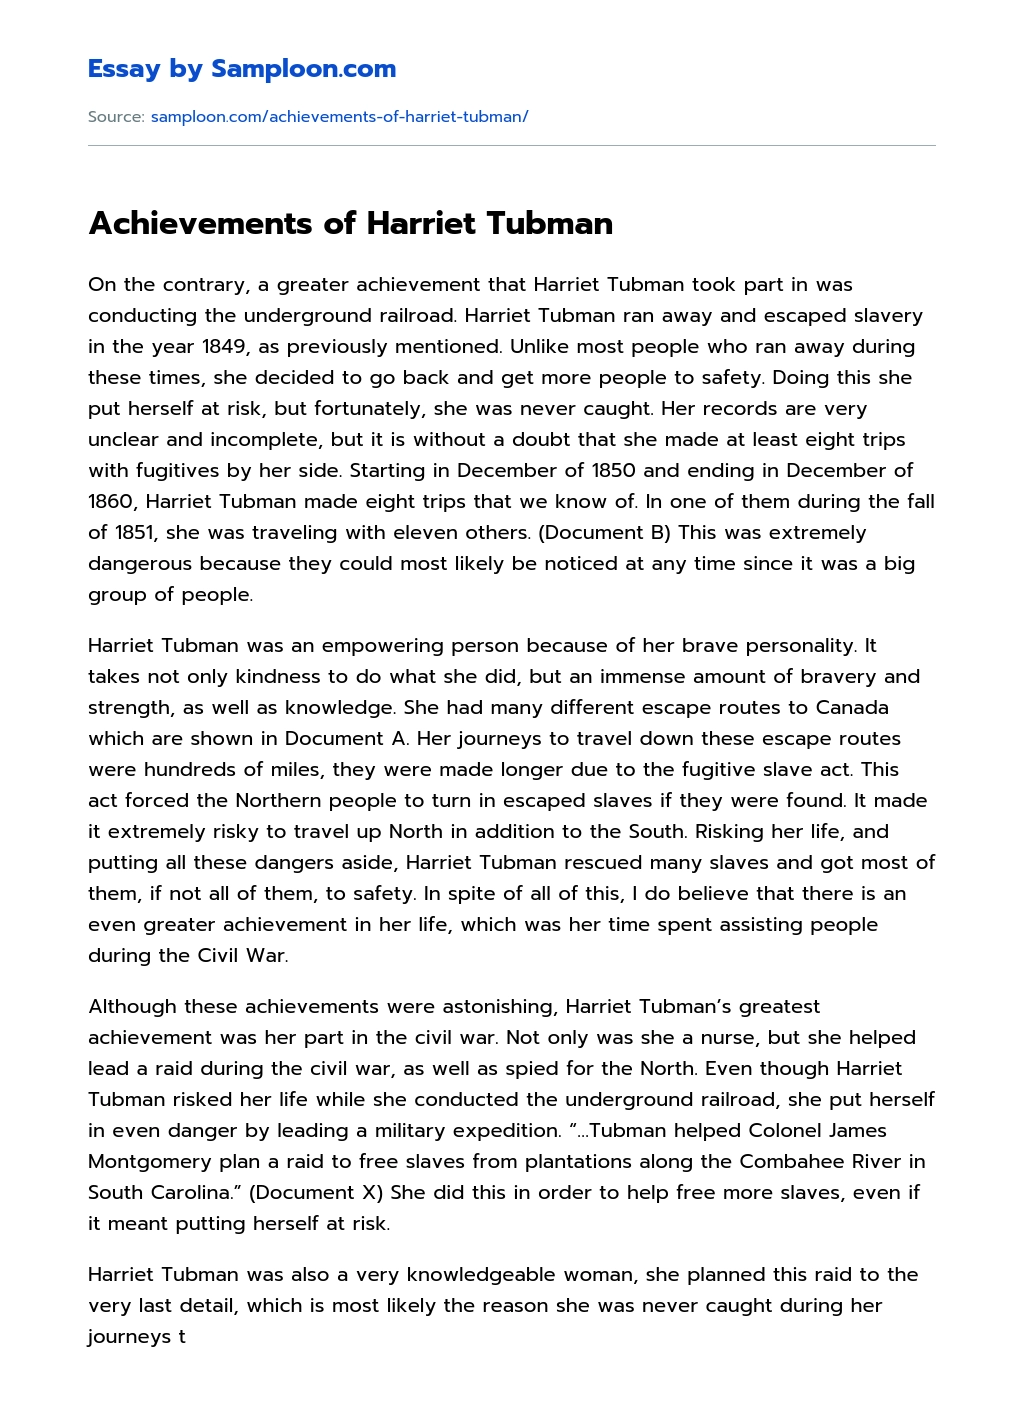 Achievements of Harriet Tubman essay